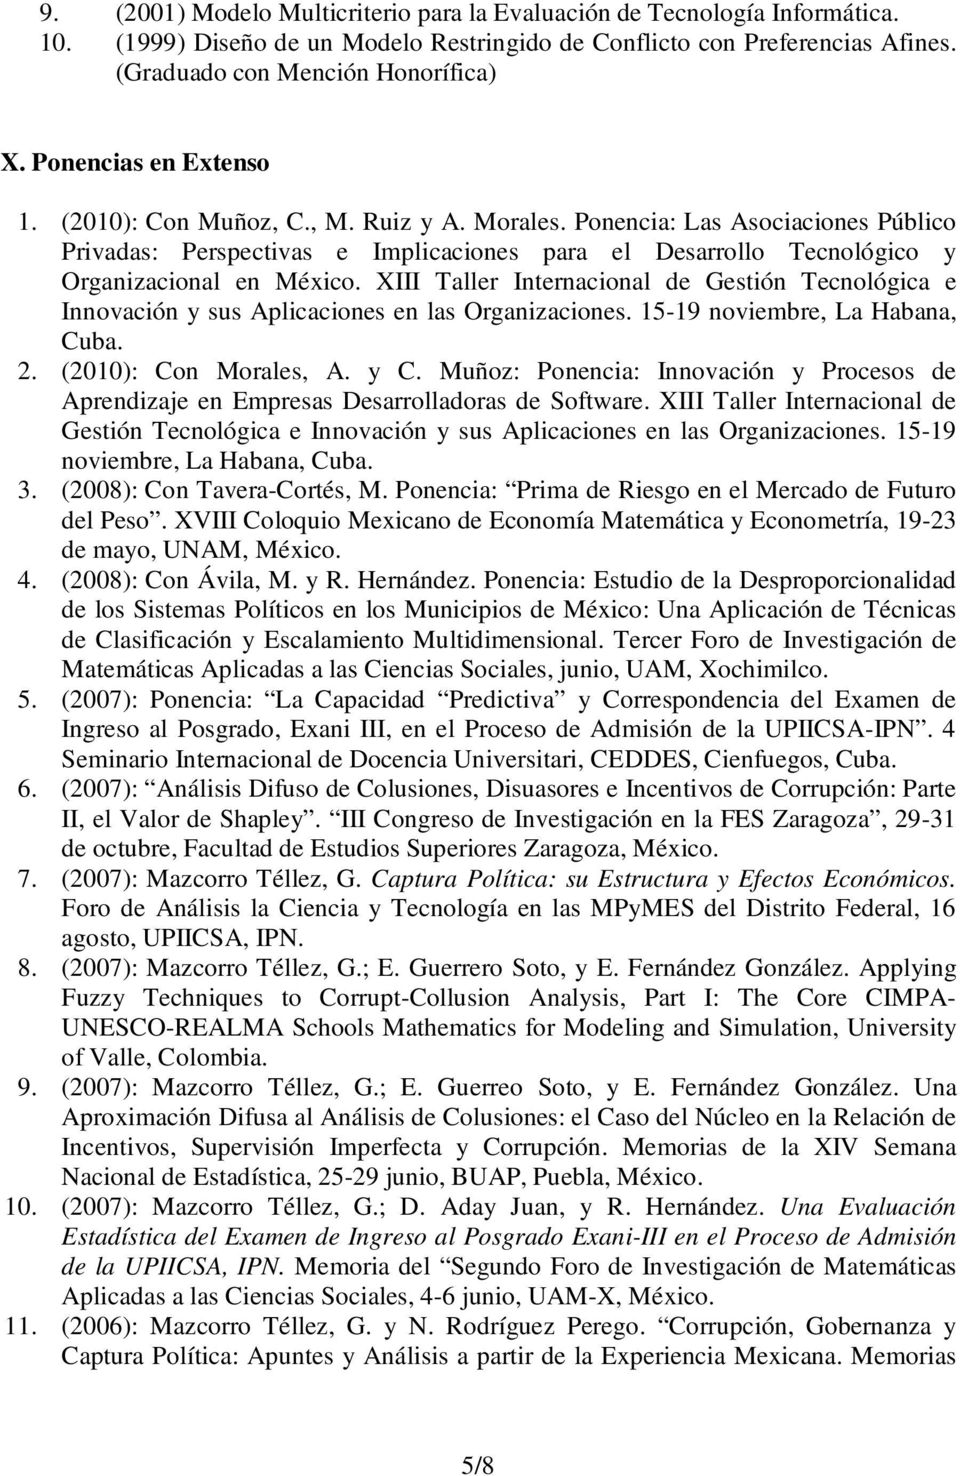 Ponencia: Las Asociaciones Público Privadas: Perspectivas e Implicaciones para el Desarrollo Tecnológico y Organizacional en México.